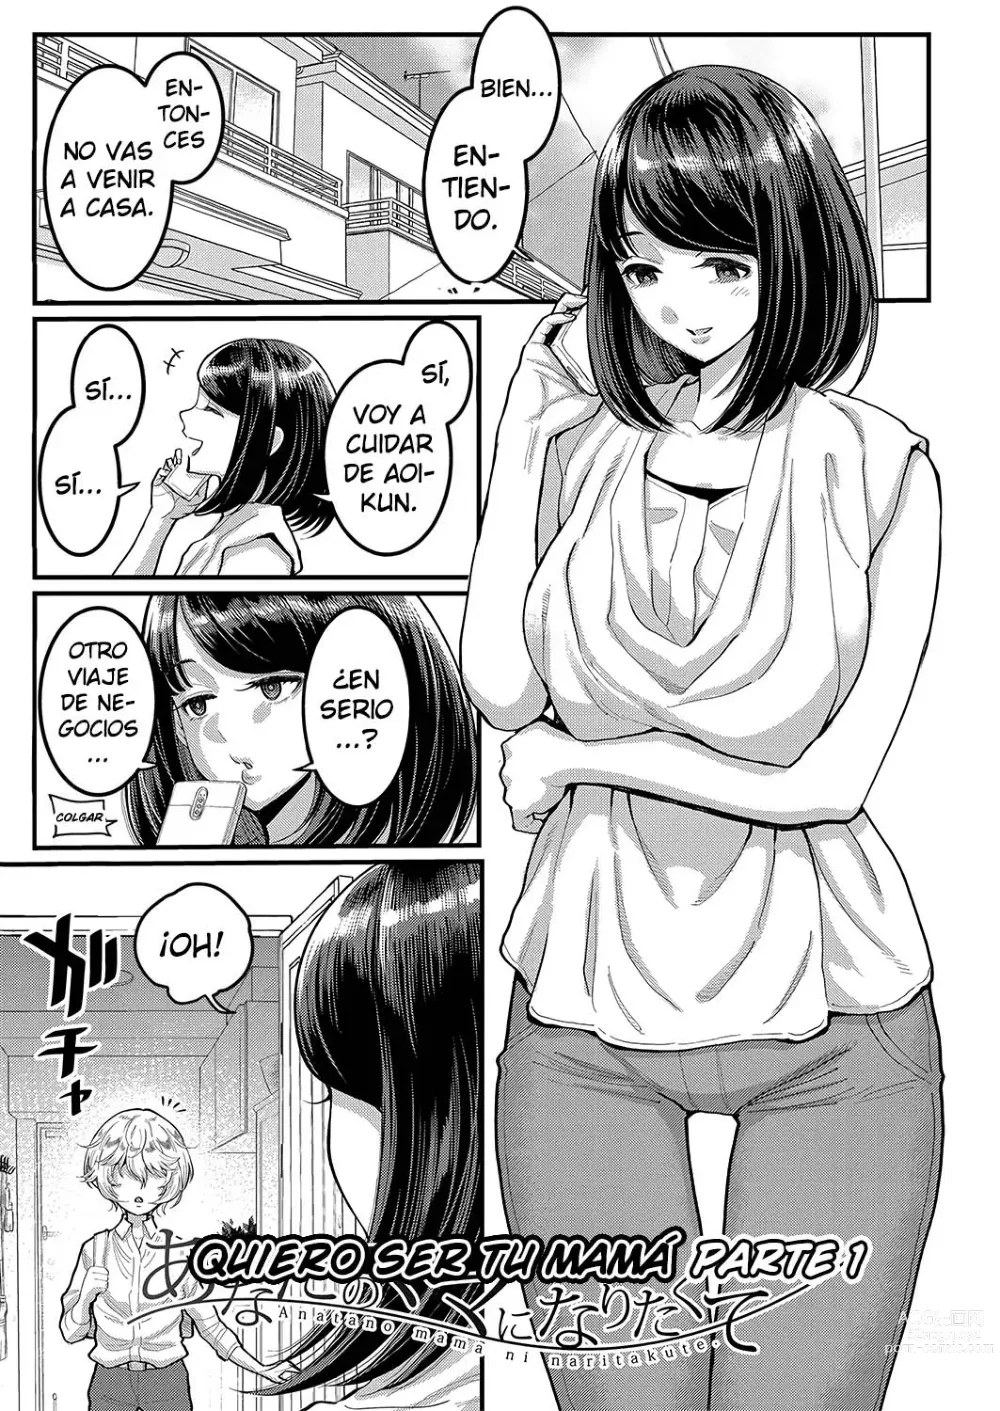 Page 5 of manga Quiero ser tu madre